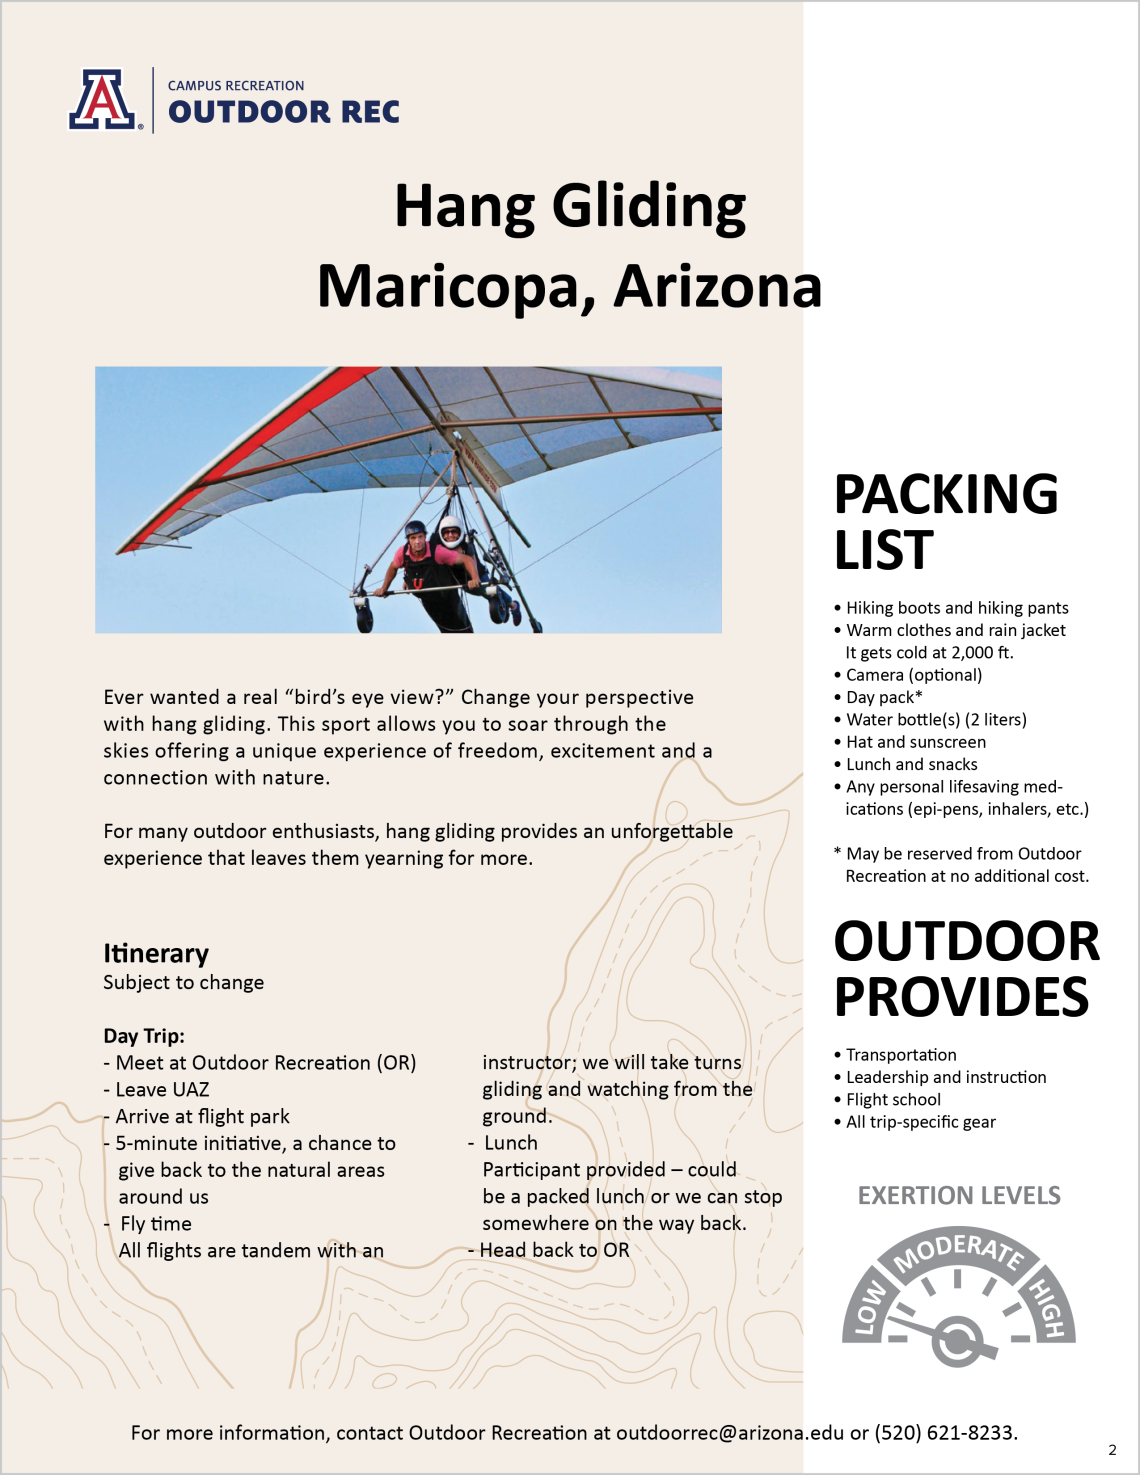 Hang Gliding - Maricopa, Arizona